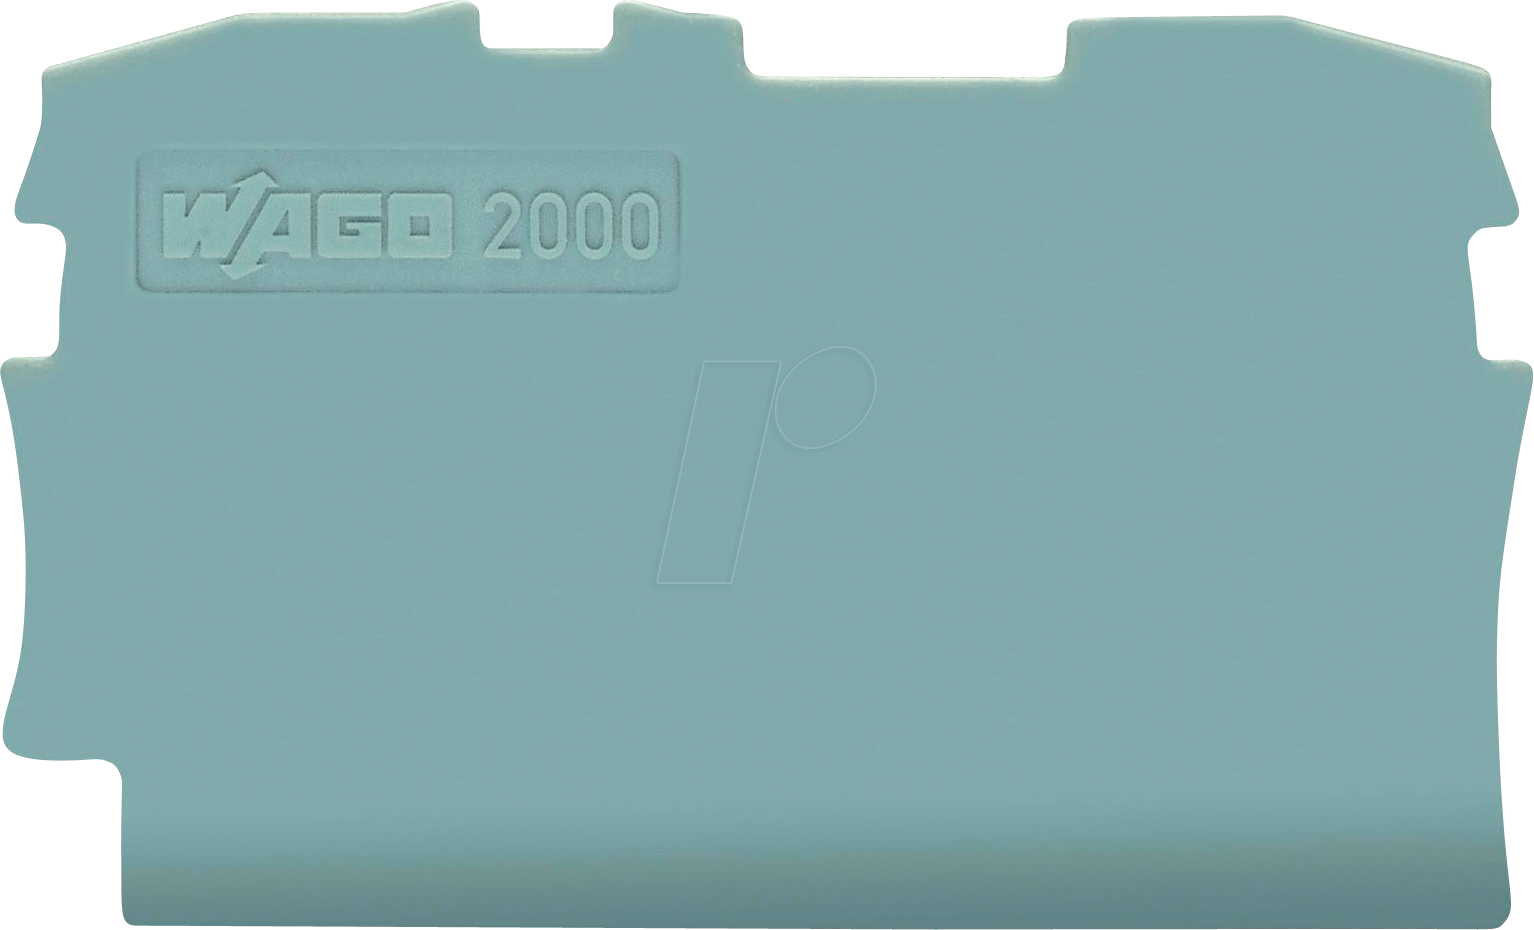 WAGO 2000-1291 - Abschluss- und Zwischenplatte für WAGO 2000 von WAGO